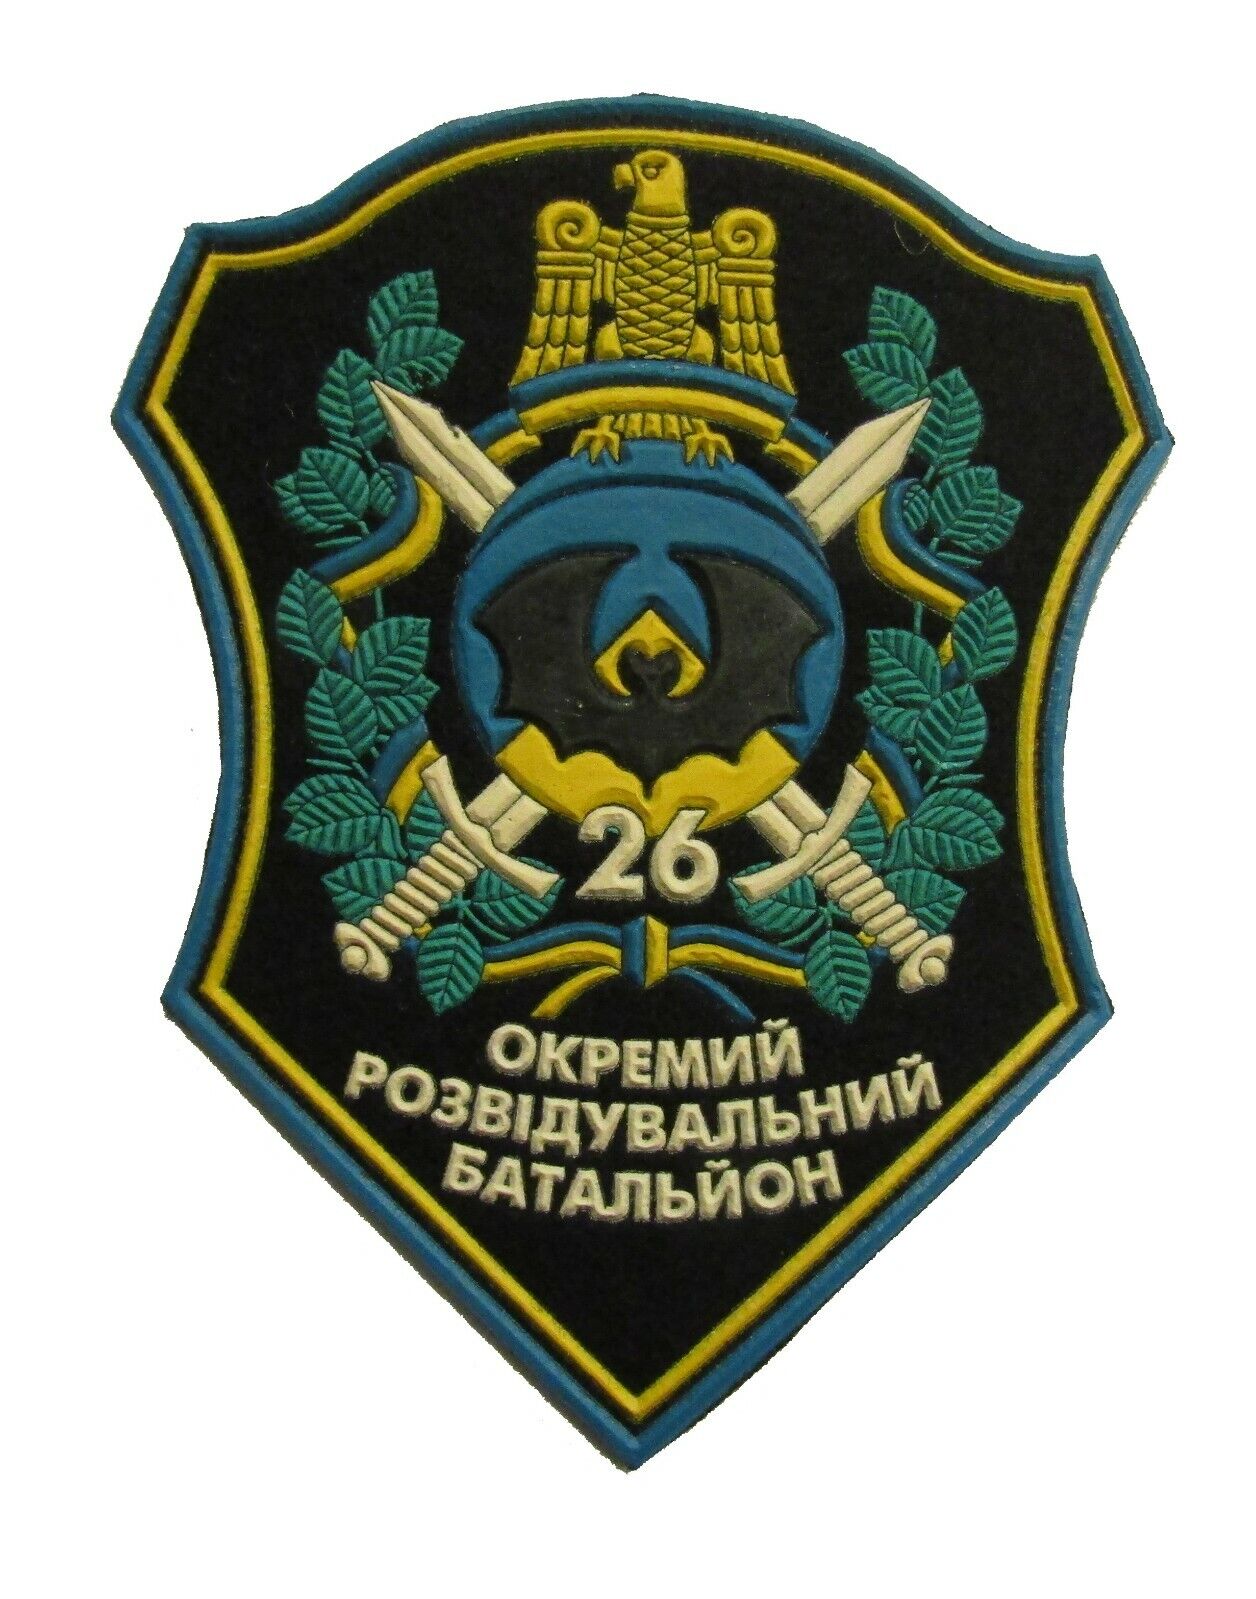 Ukrainian Sleeve Patch for 26th Separate Reconnaissance Battalion